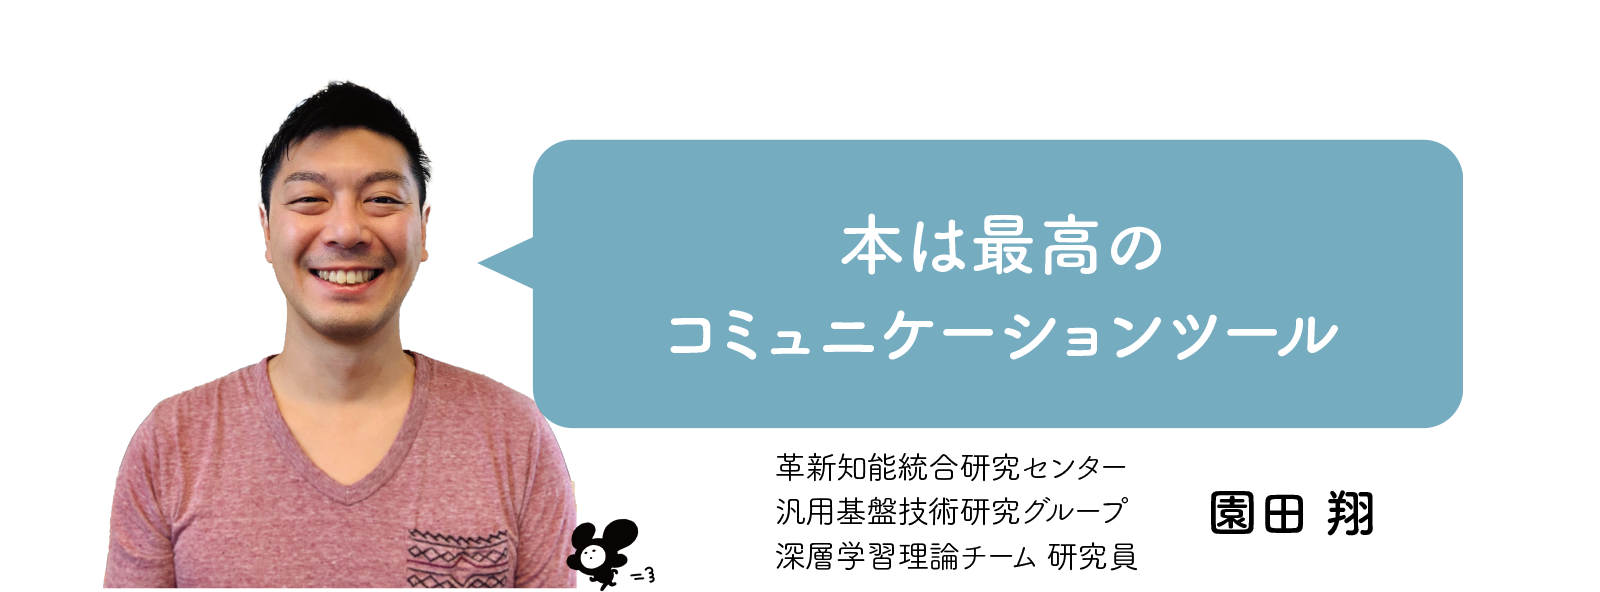 園田翔博士「本は最高のコミュニケーションツール」